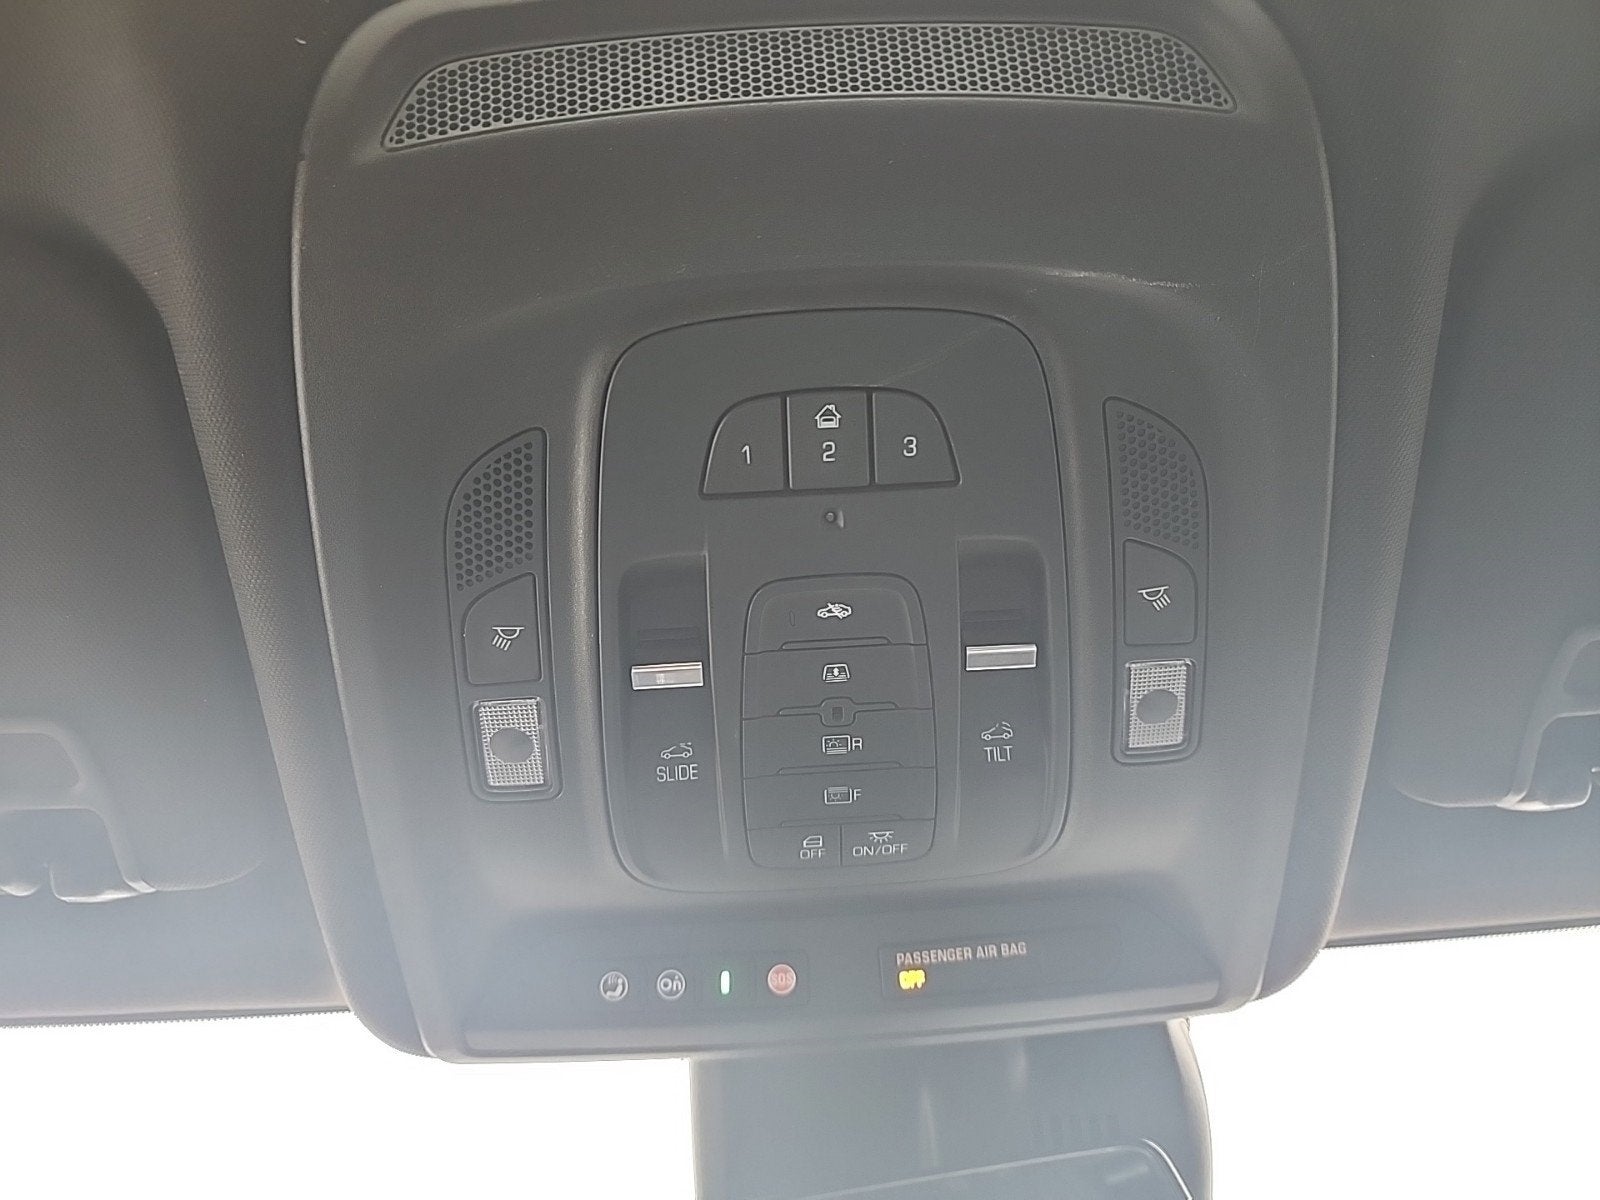 2017 Cadillac CT6 Hybrid Plug-In